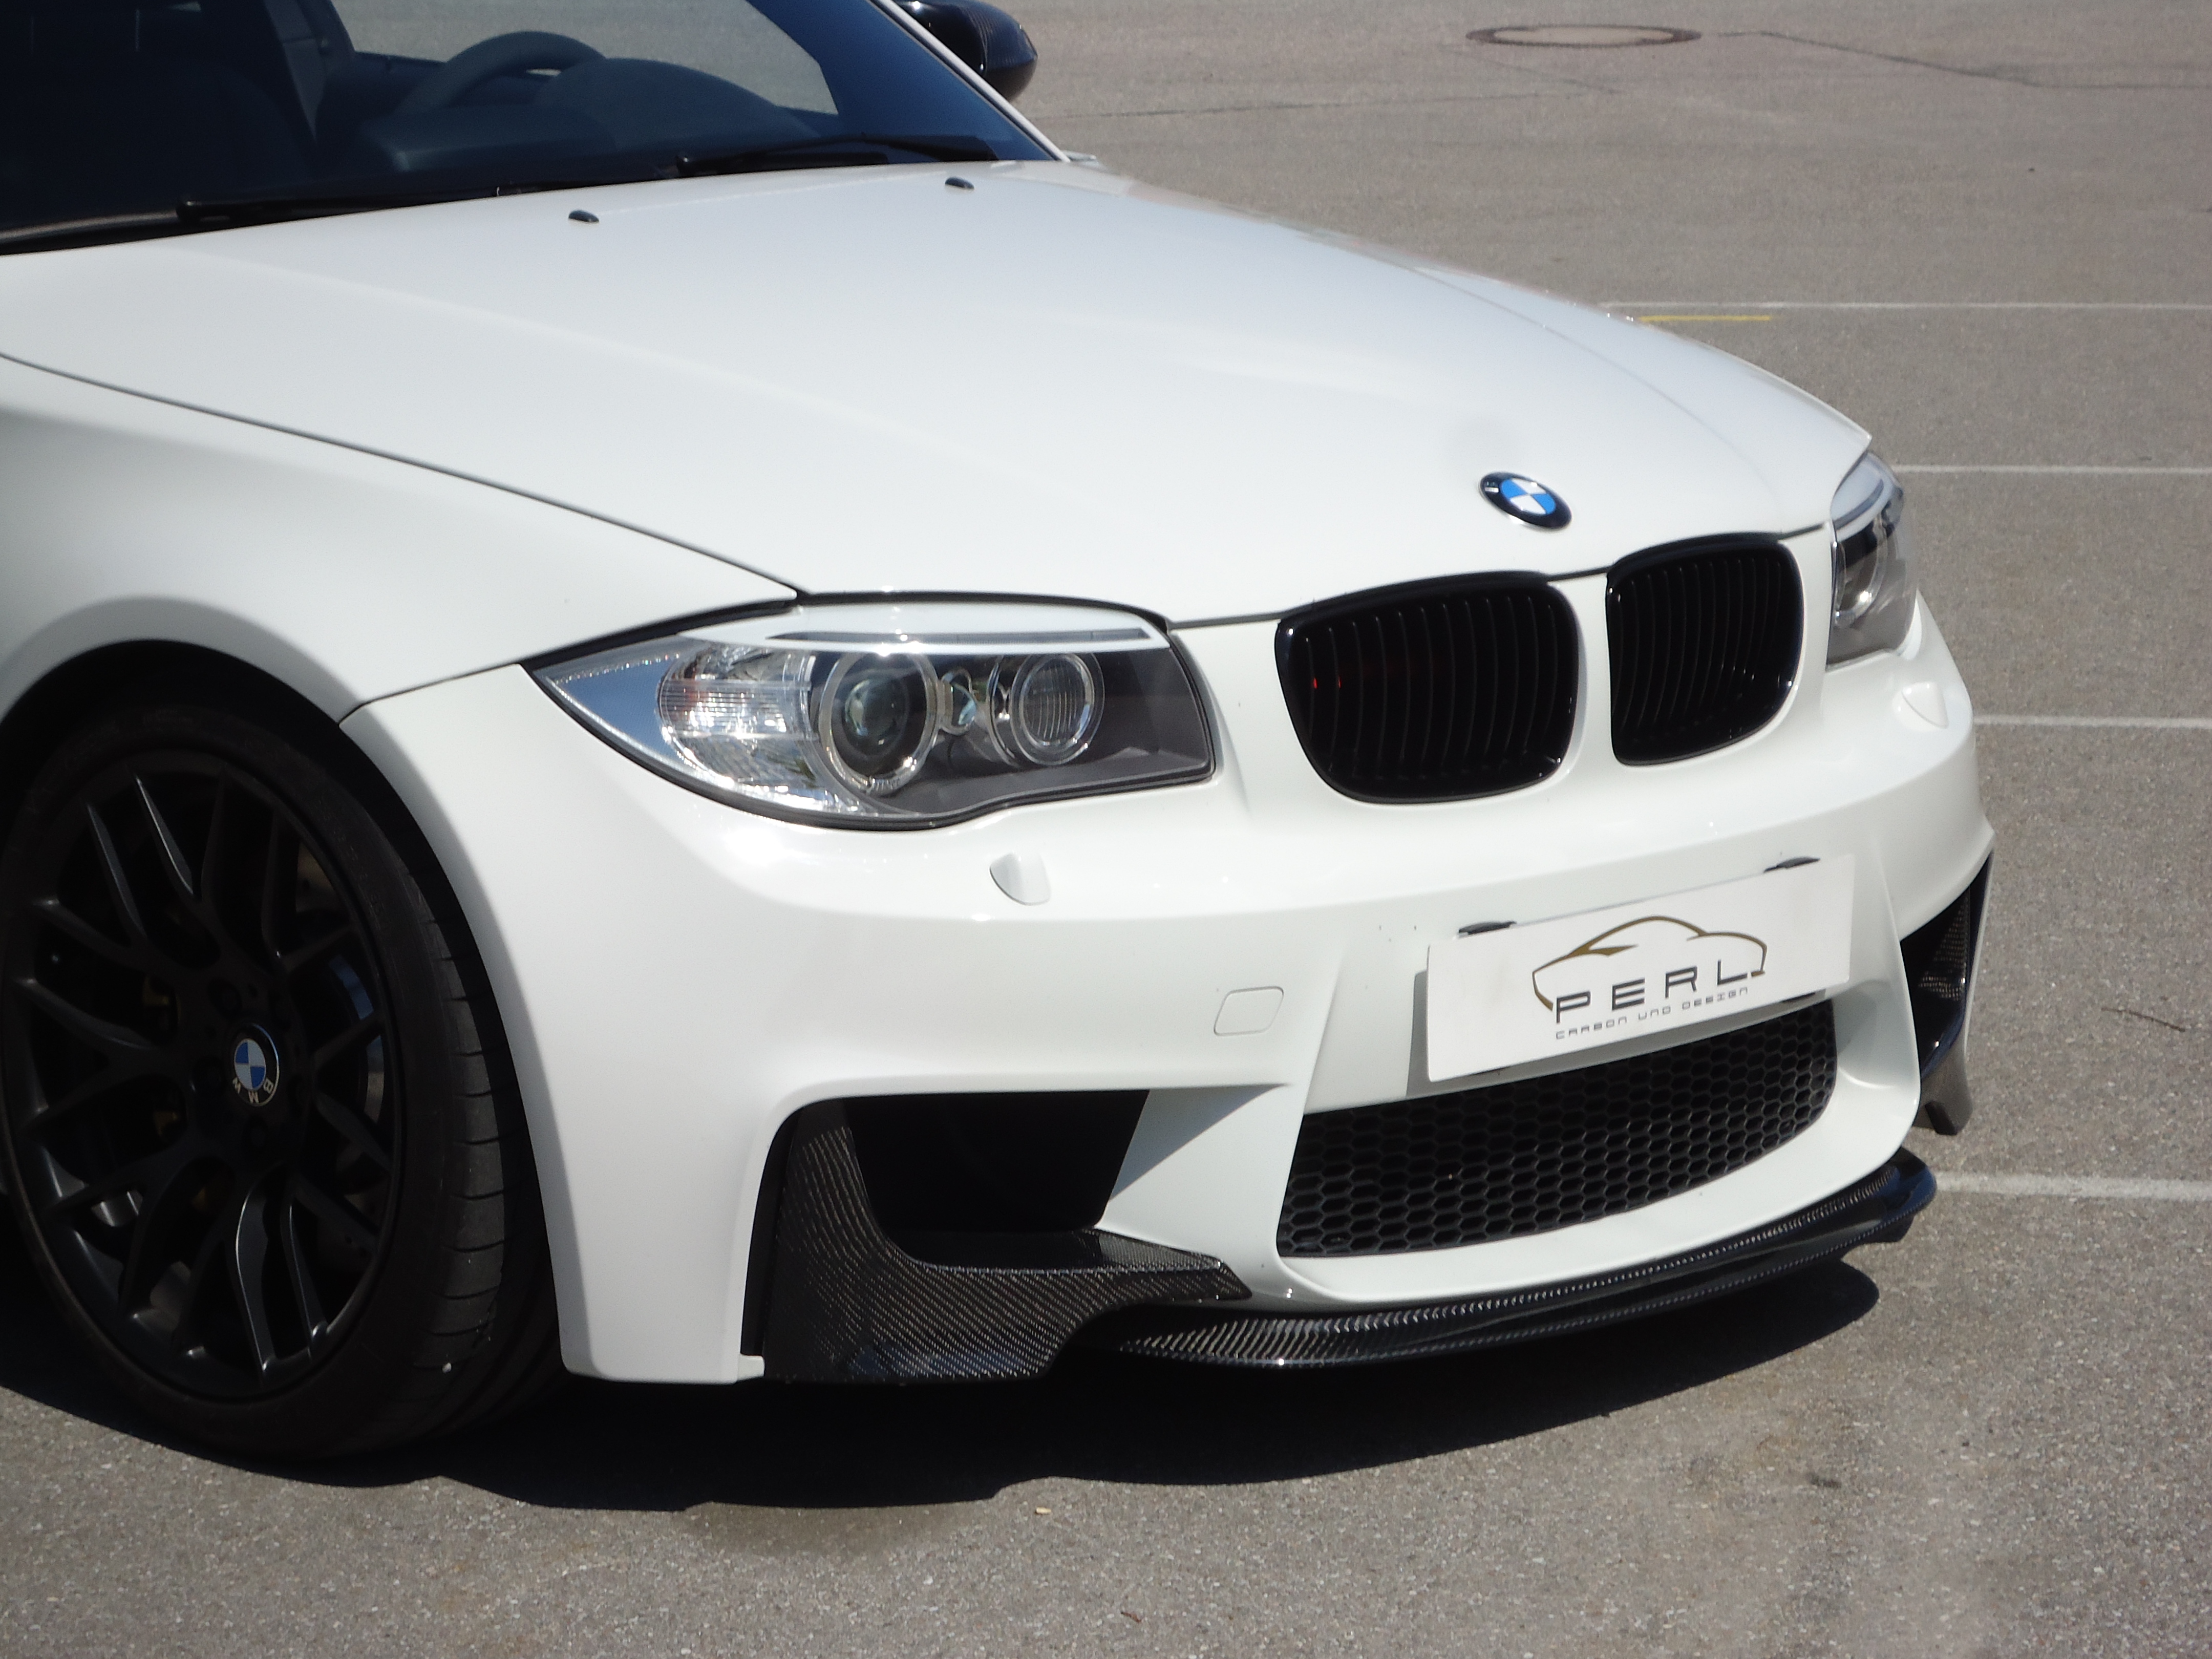 Carbon Emblem Ecken Set schwarz+weiß für BMW M M1 F20 F21 E81 E82 E87 E88 Paket